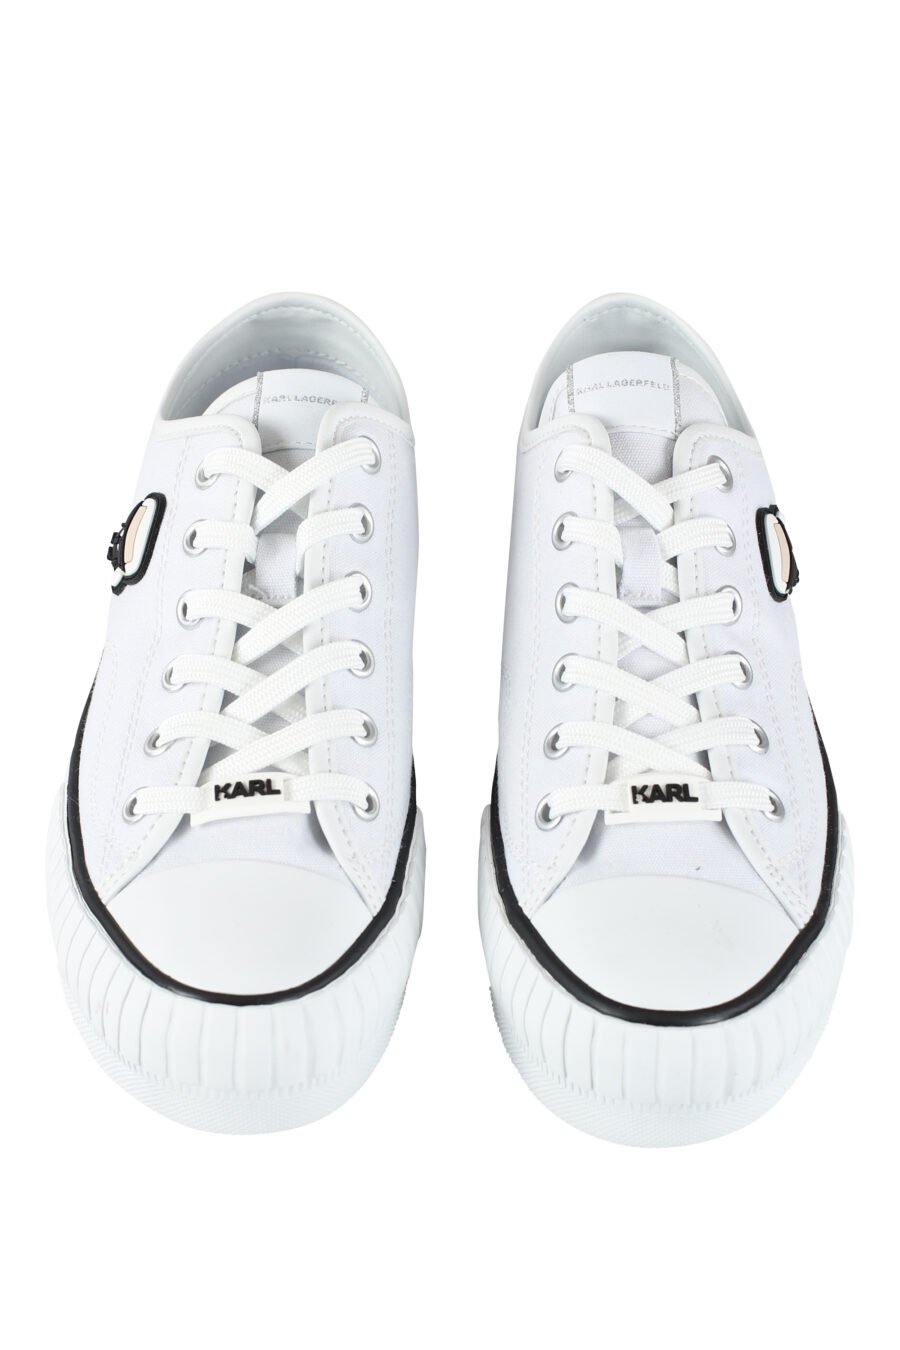 Zapatillas blancas estilo converse con logo "karl" en goma - IMG 9620